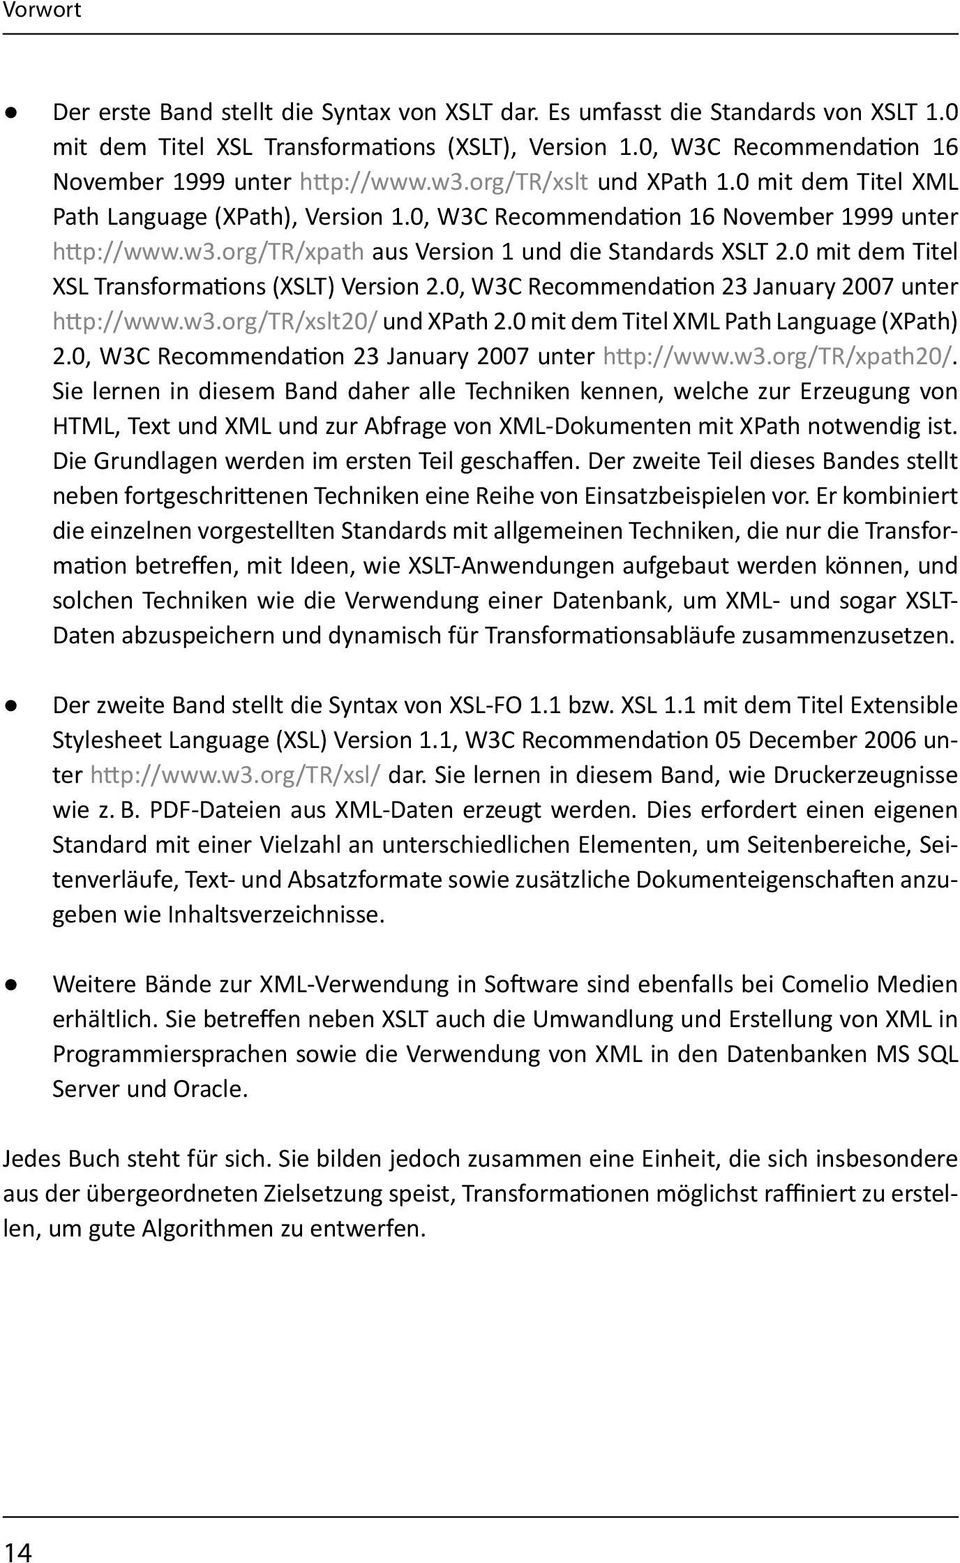 0 mit dem Titel XSL Transformations (XSLT) Version 2.0, W3C Recommendation 23 January 2007 unter http://www.w3.org/tr/xslt20/ und XPath 2.0 mit dem Titel XML Path Language (XPath) 2.